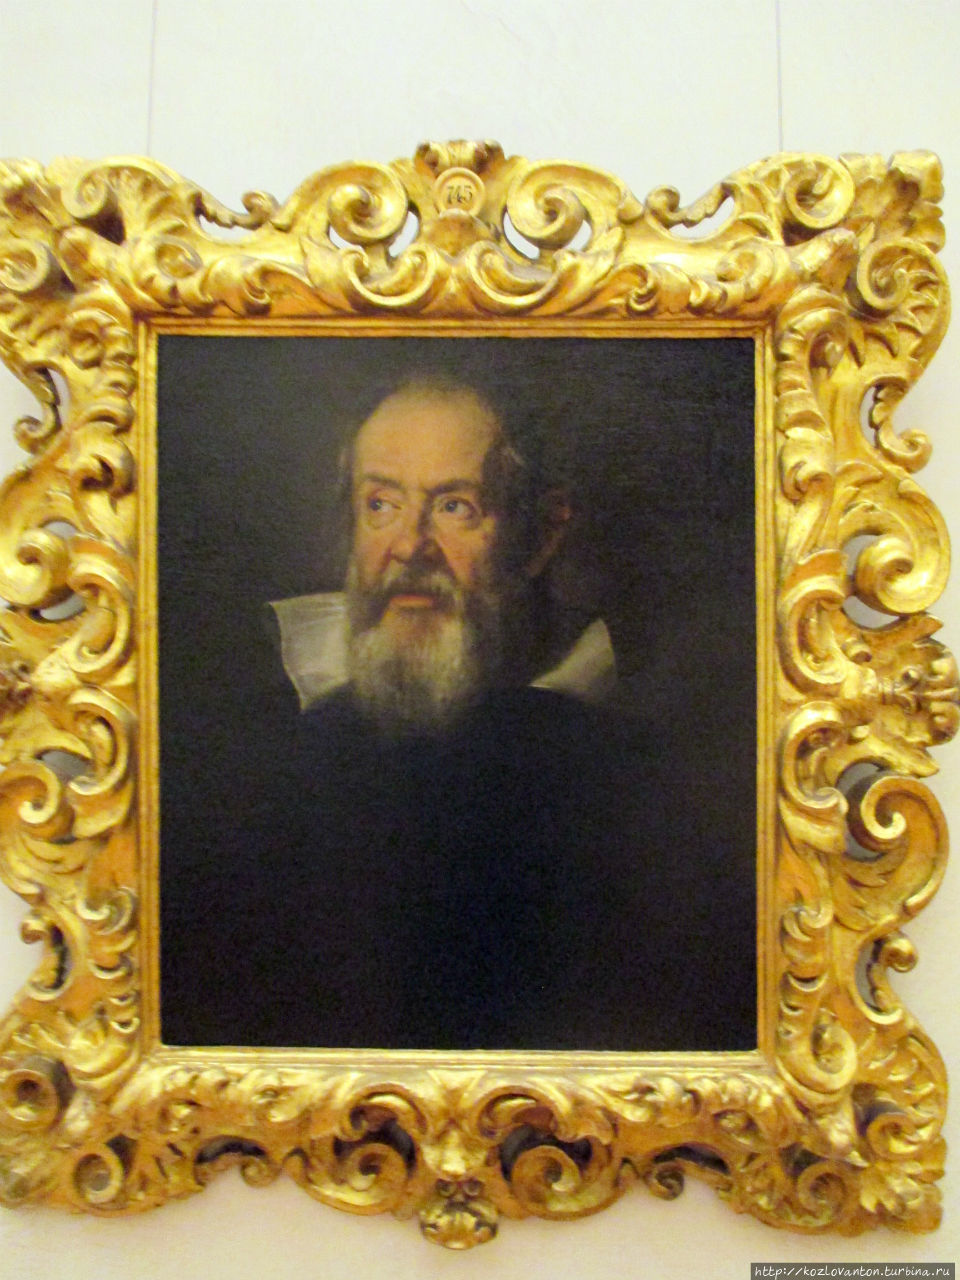 Портрет Галилео Галилея кисти Юстуса Сустерманса. Так и хочется сказать, что из школьного учебника физики, но нет — из галереи Уффици. Пиза, Италия